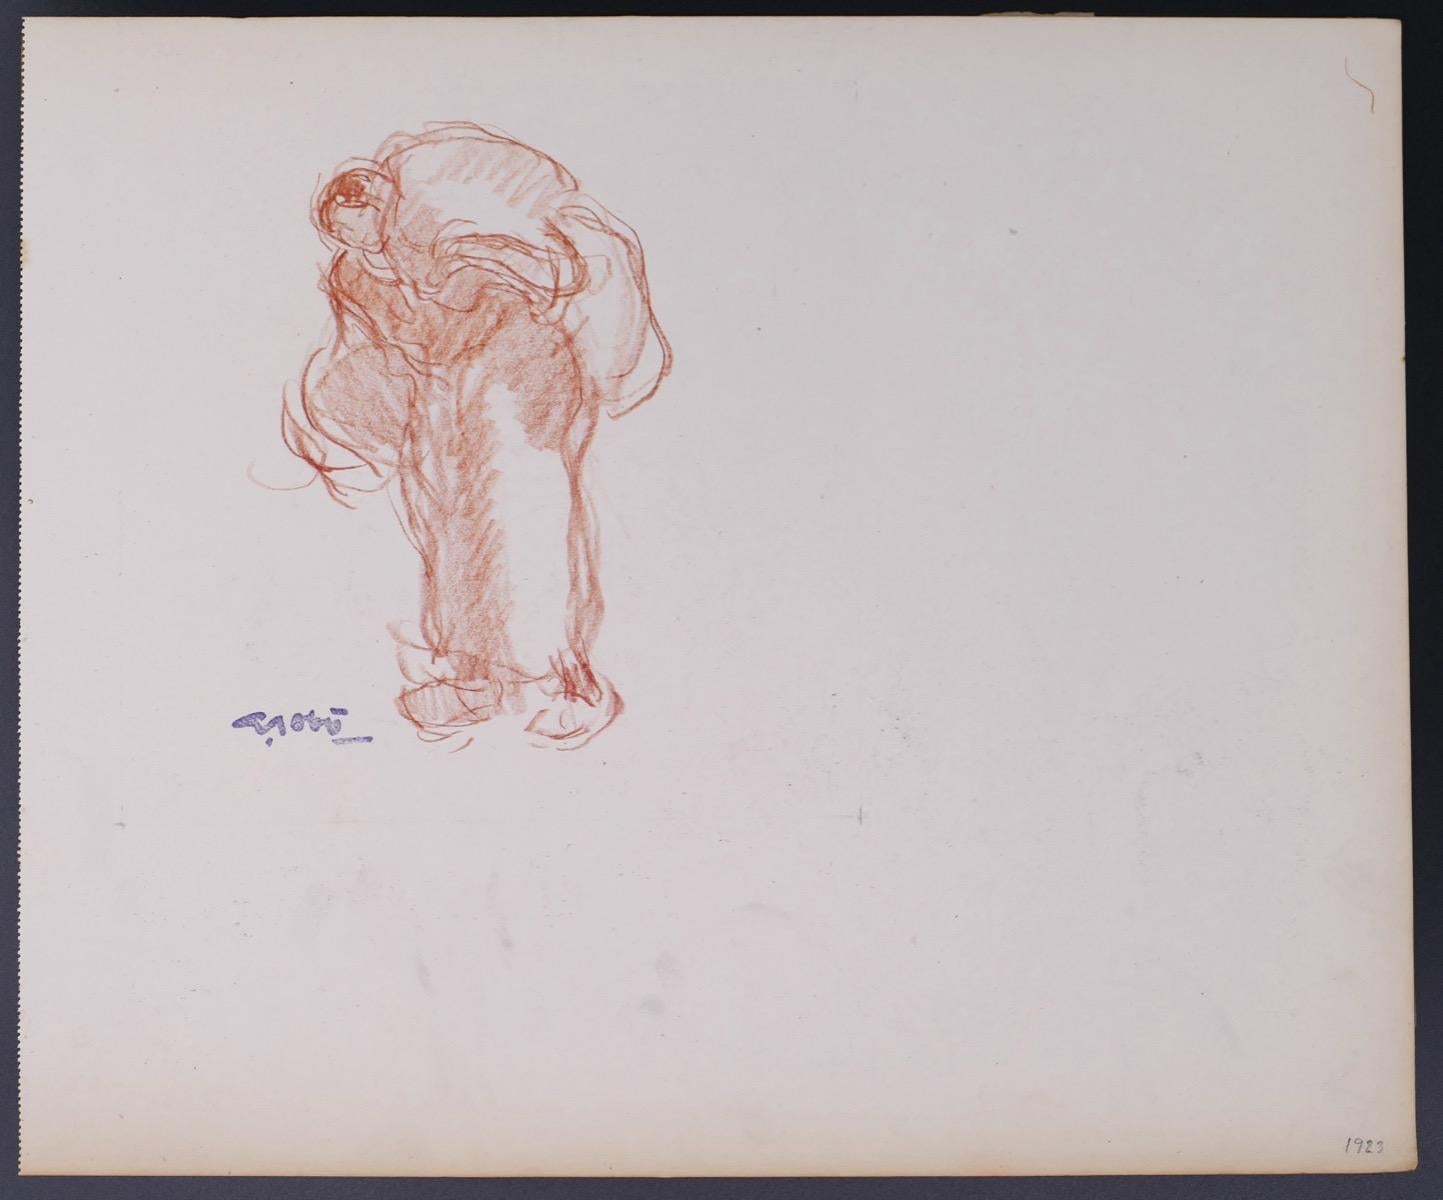 Woman Carrying the Burden - dessin original de G. Gbo - début du XXe siècle